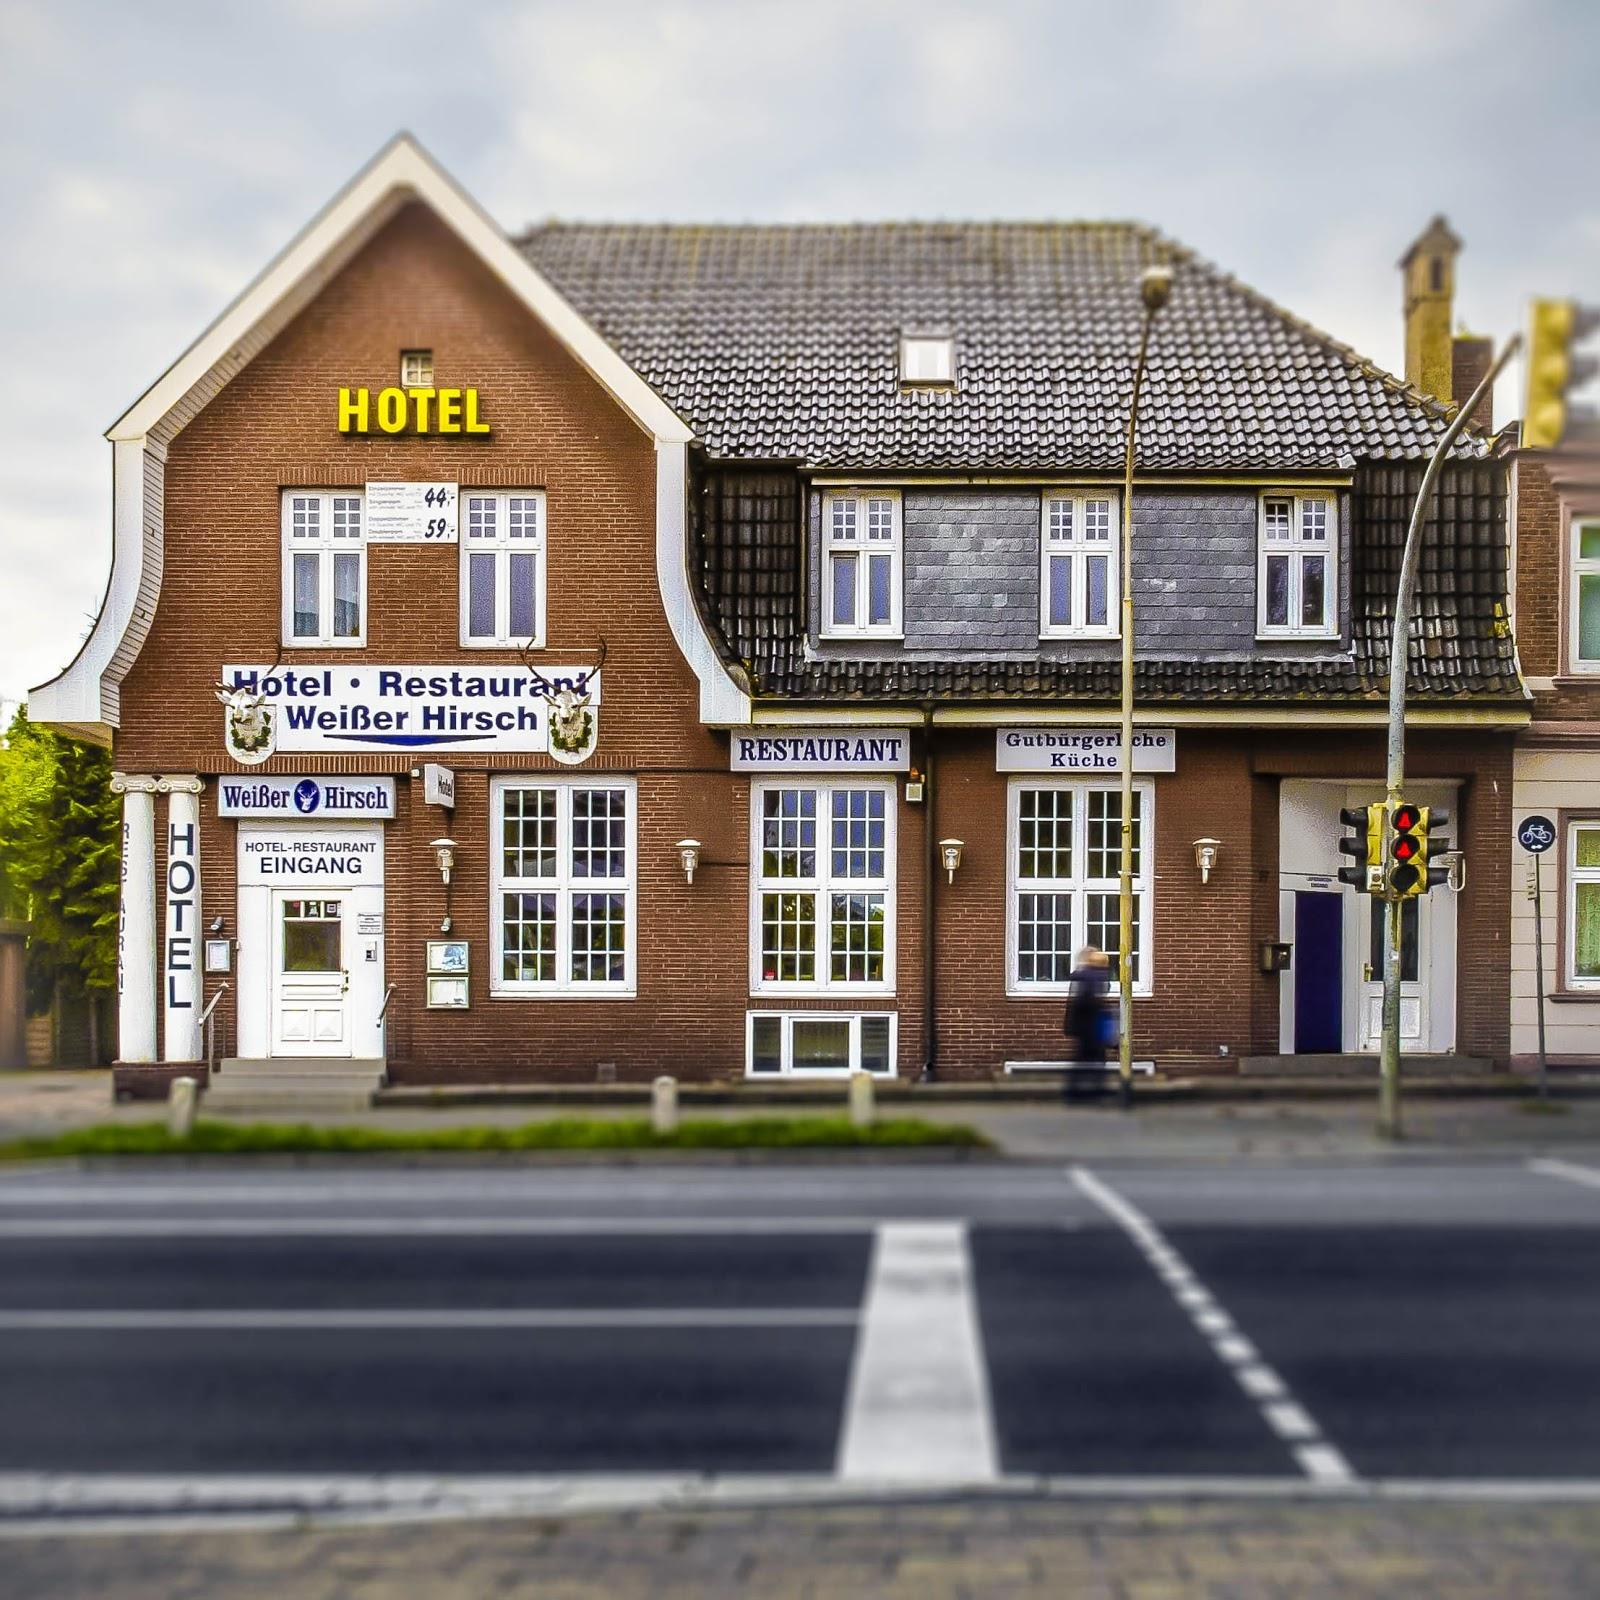 Restaurant "Weißer Hirsch" in Lübeck